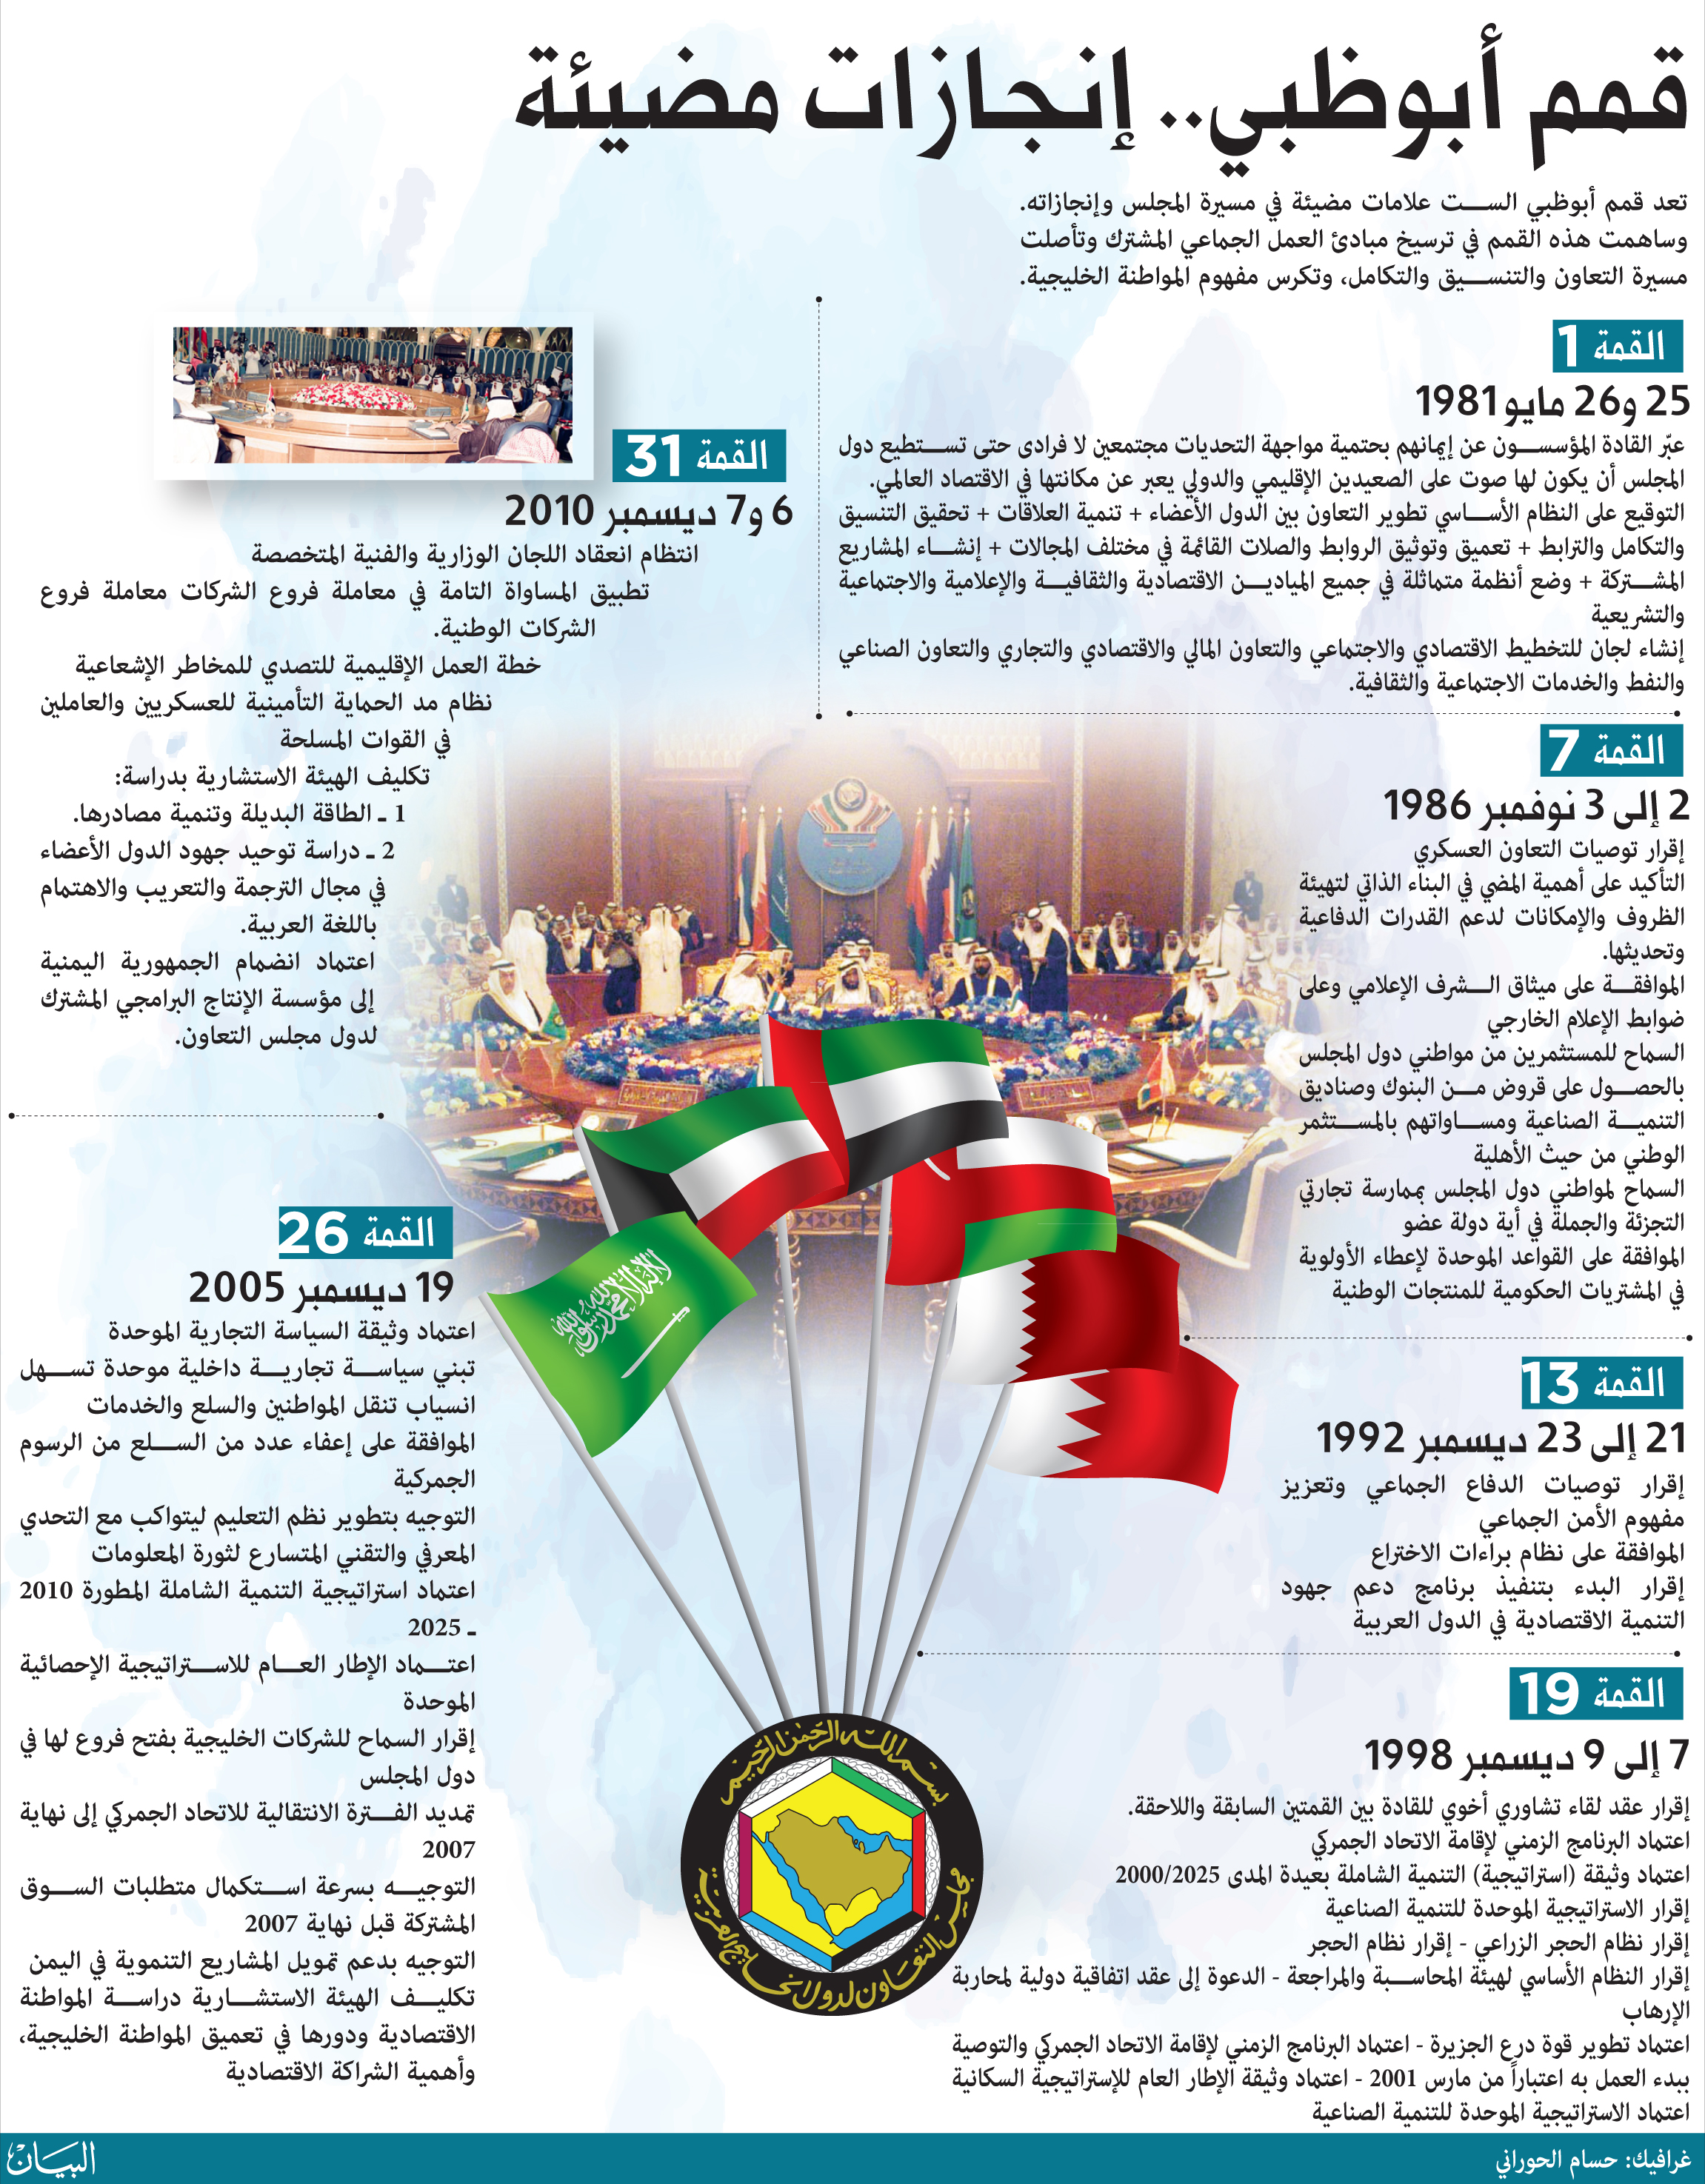 الإمارات دعم وعطاء لمسيرة التعاون عالم واحد العرب البيان